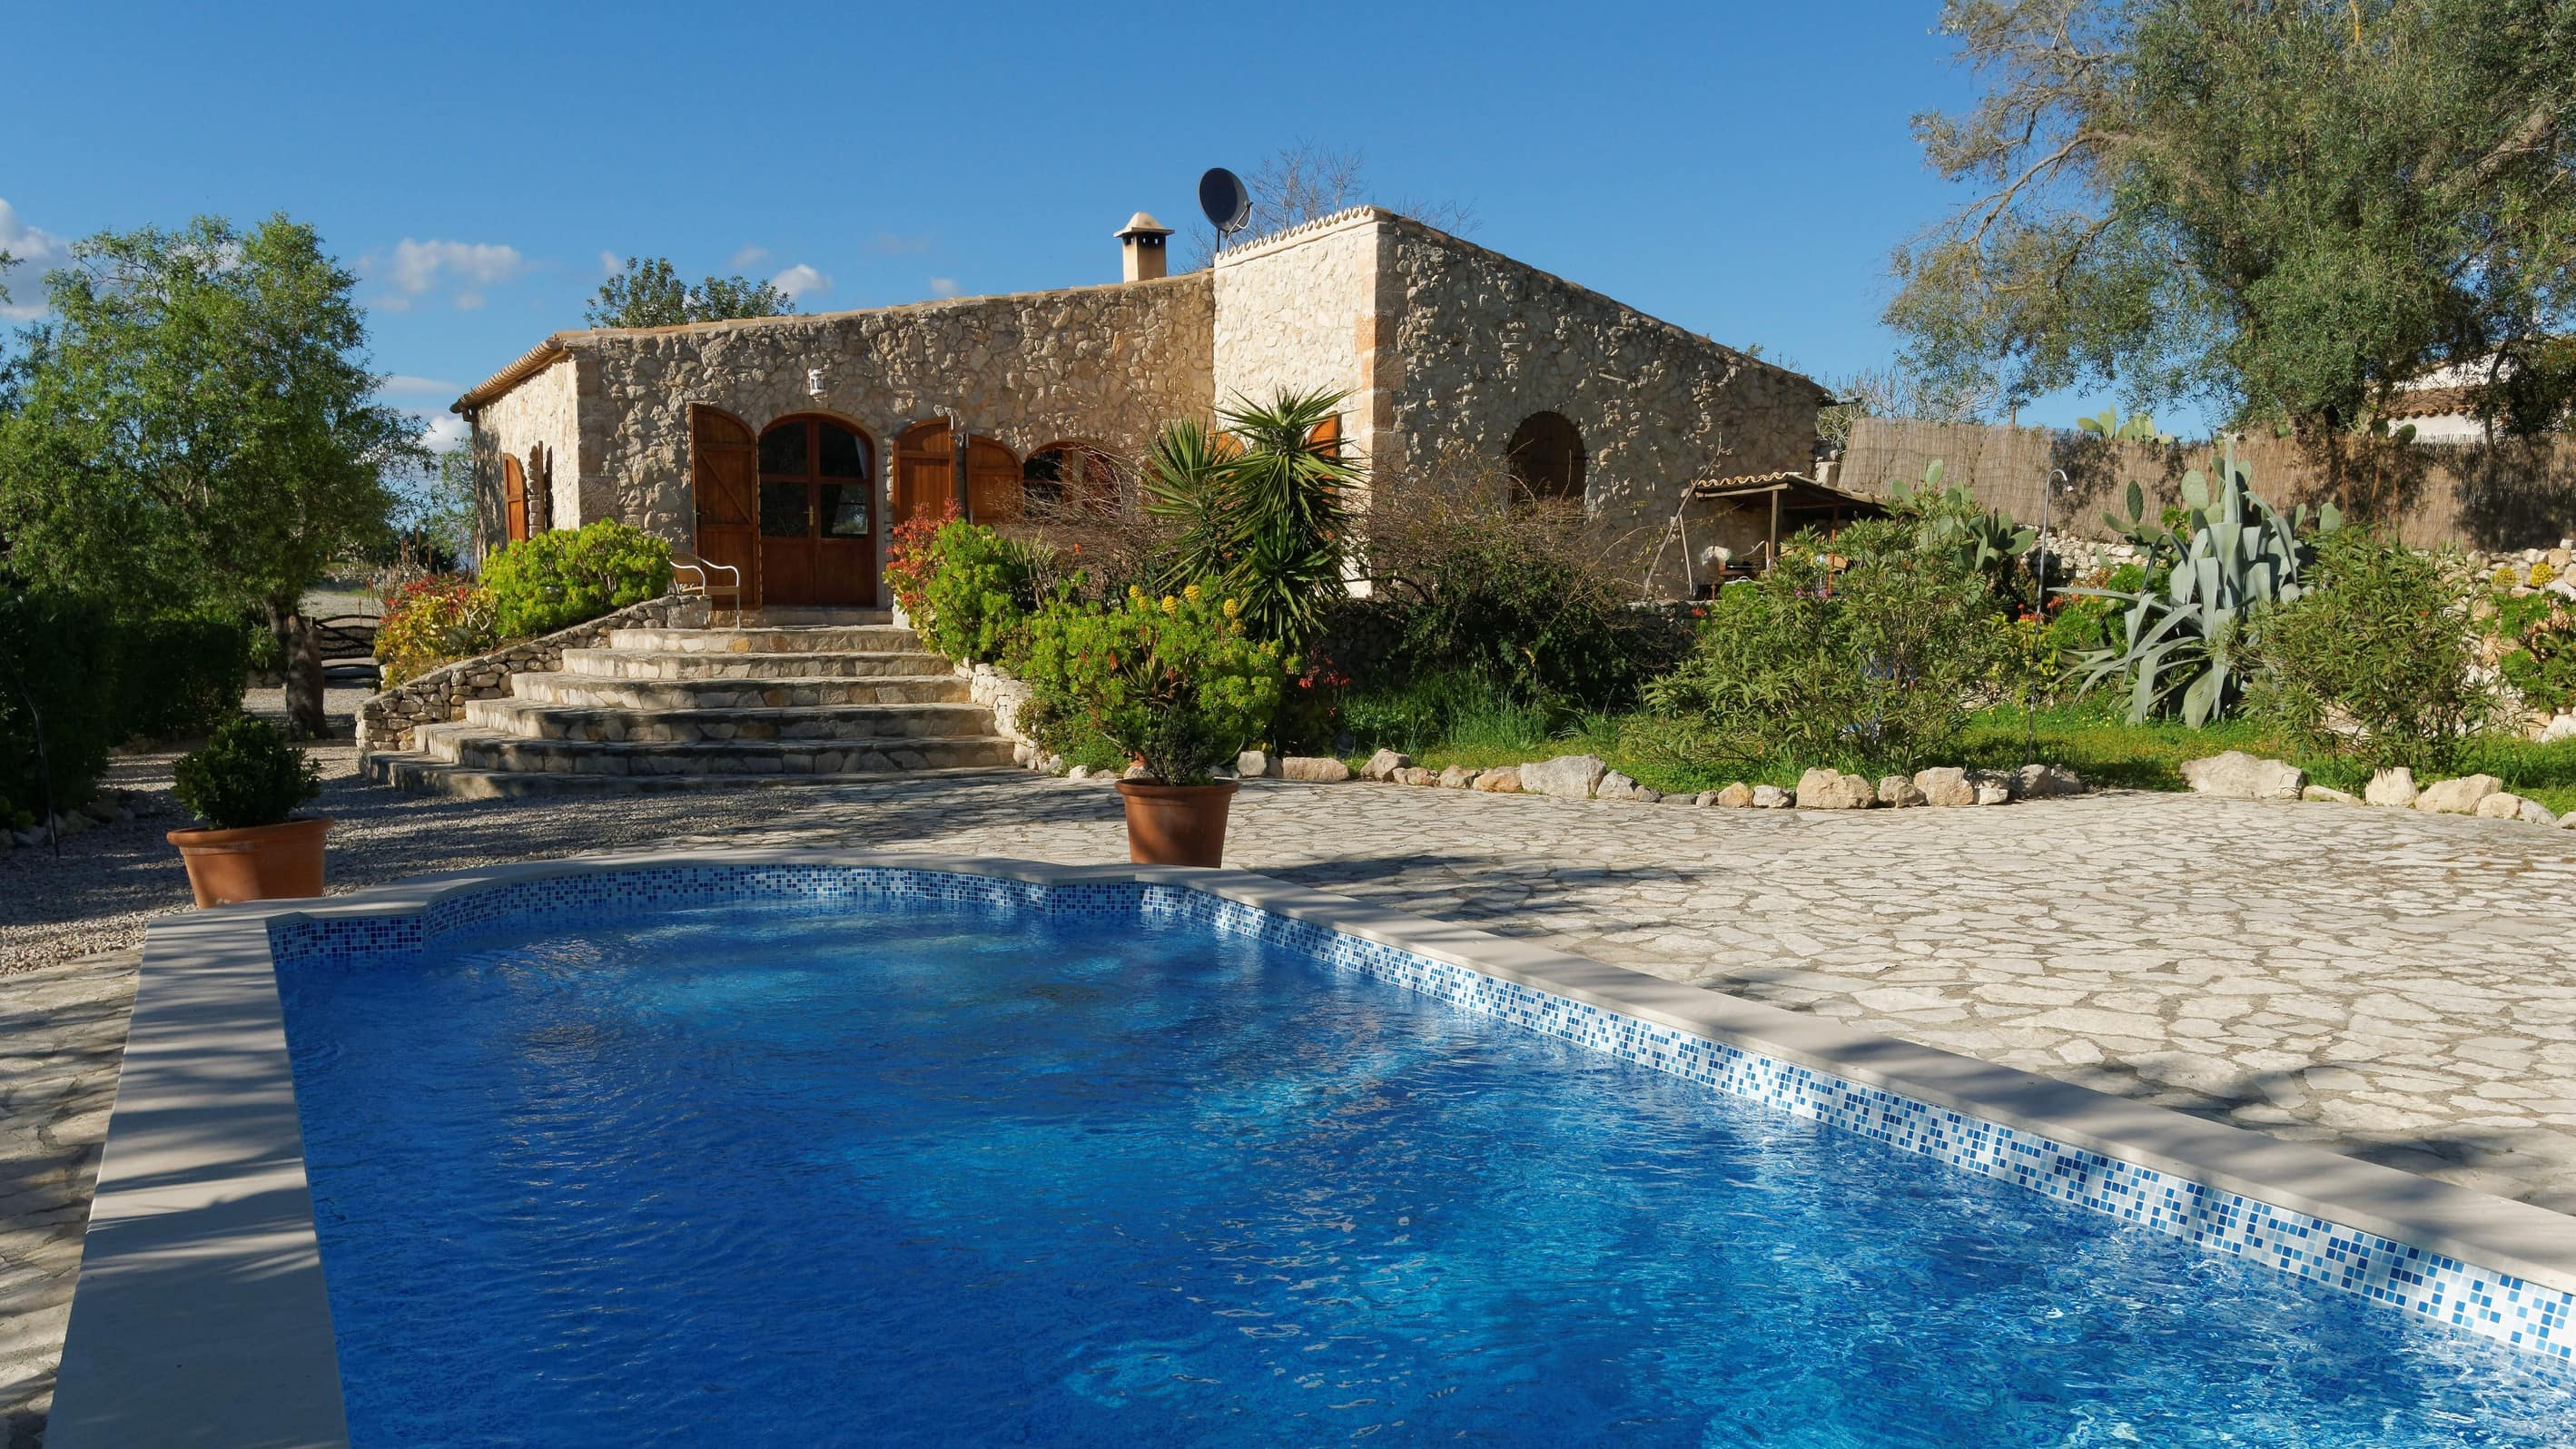 Genieten met een vakantiehuis met zwembad in Spanje